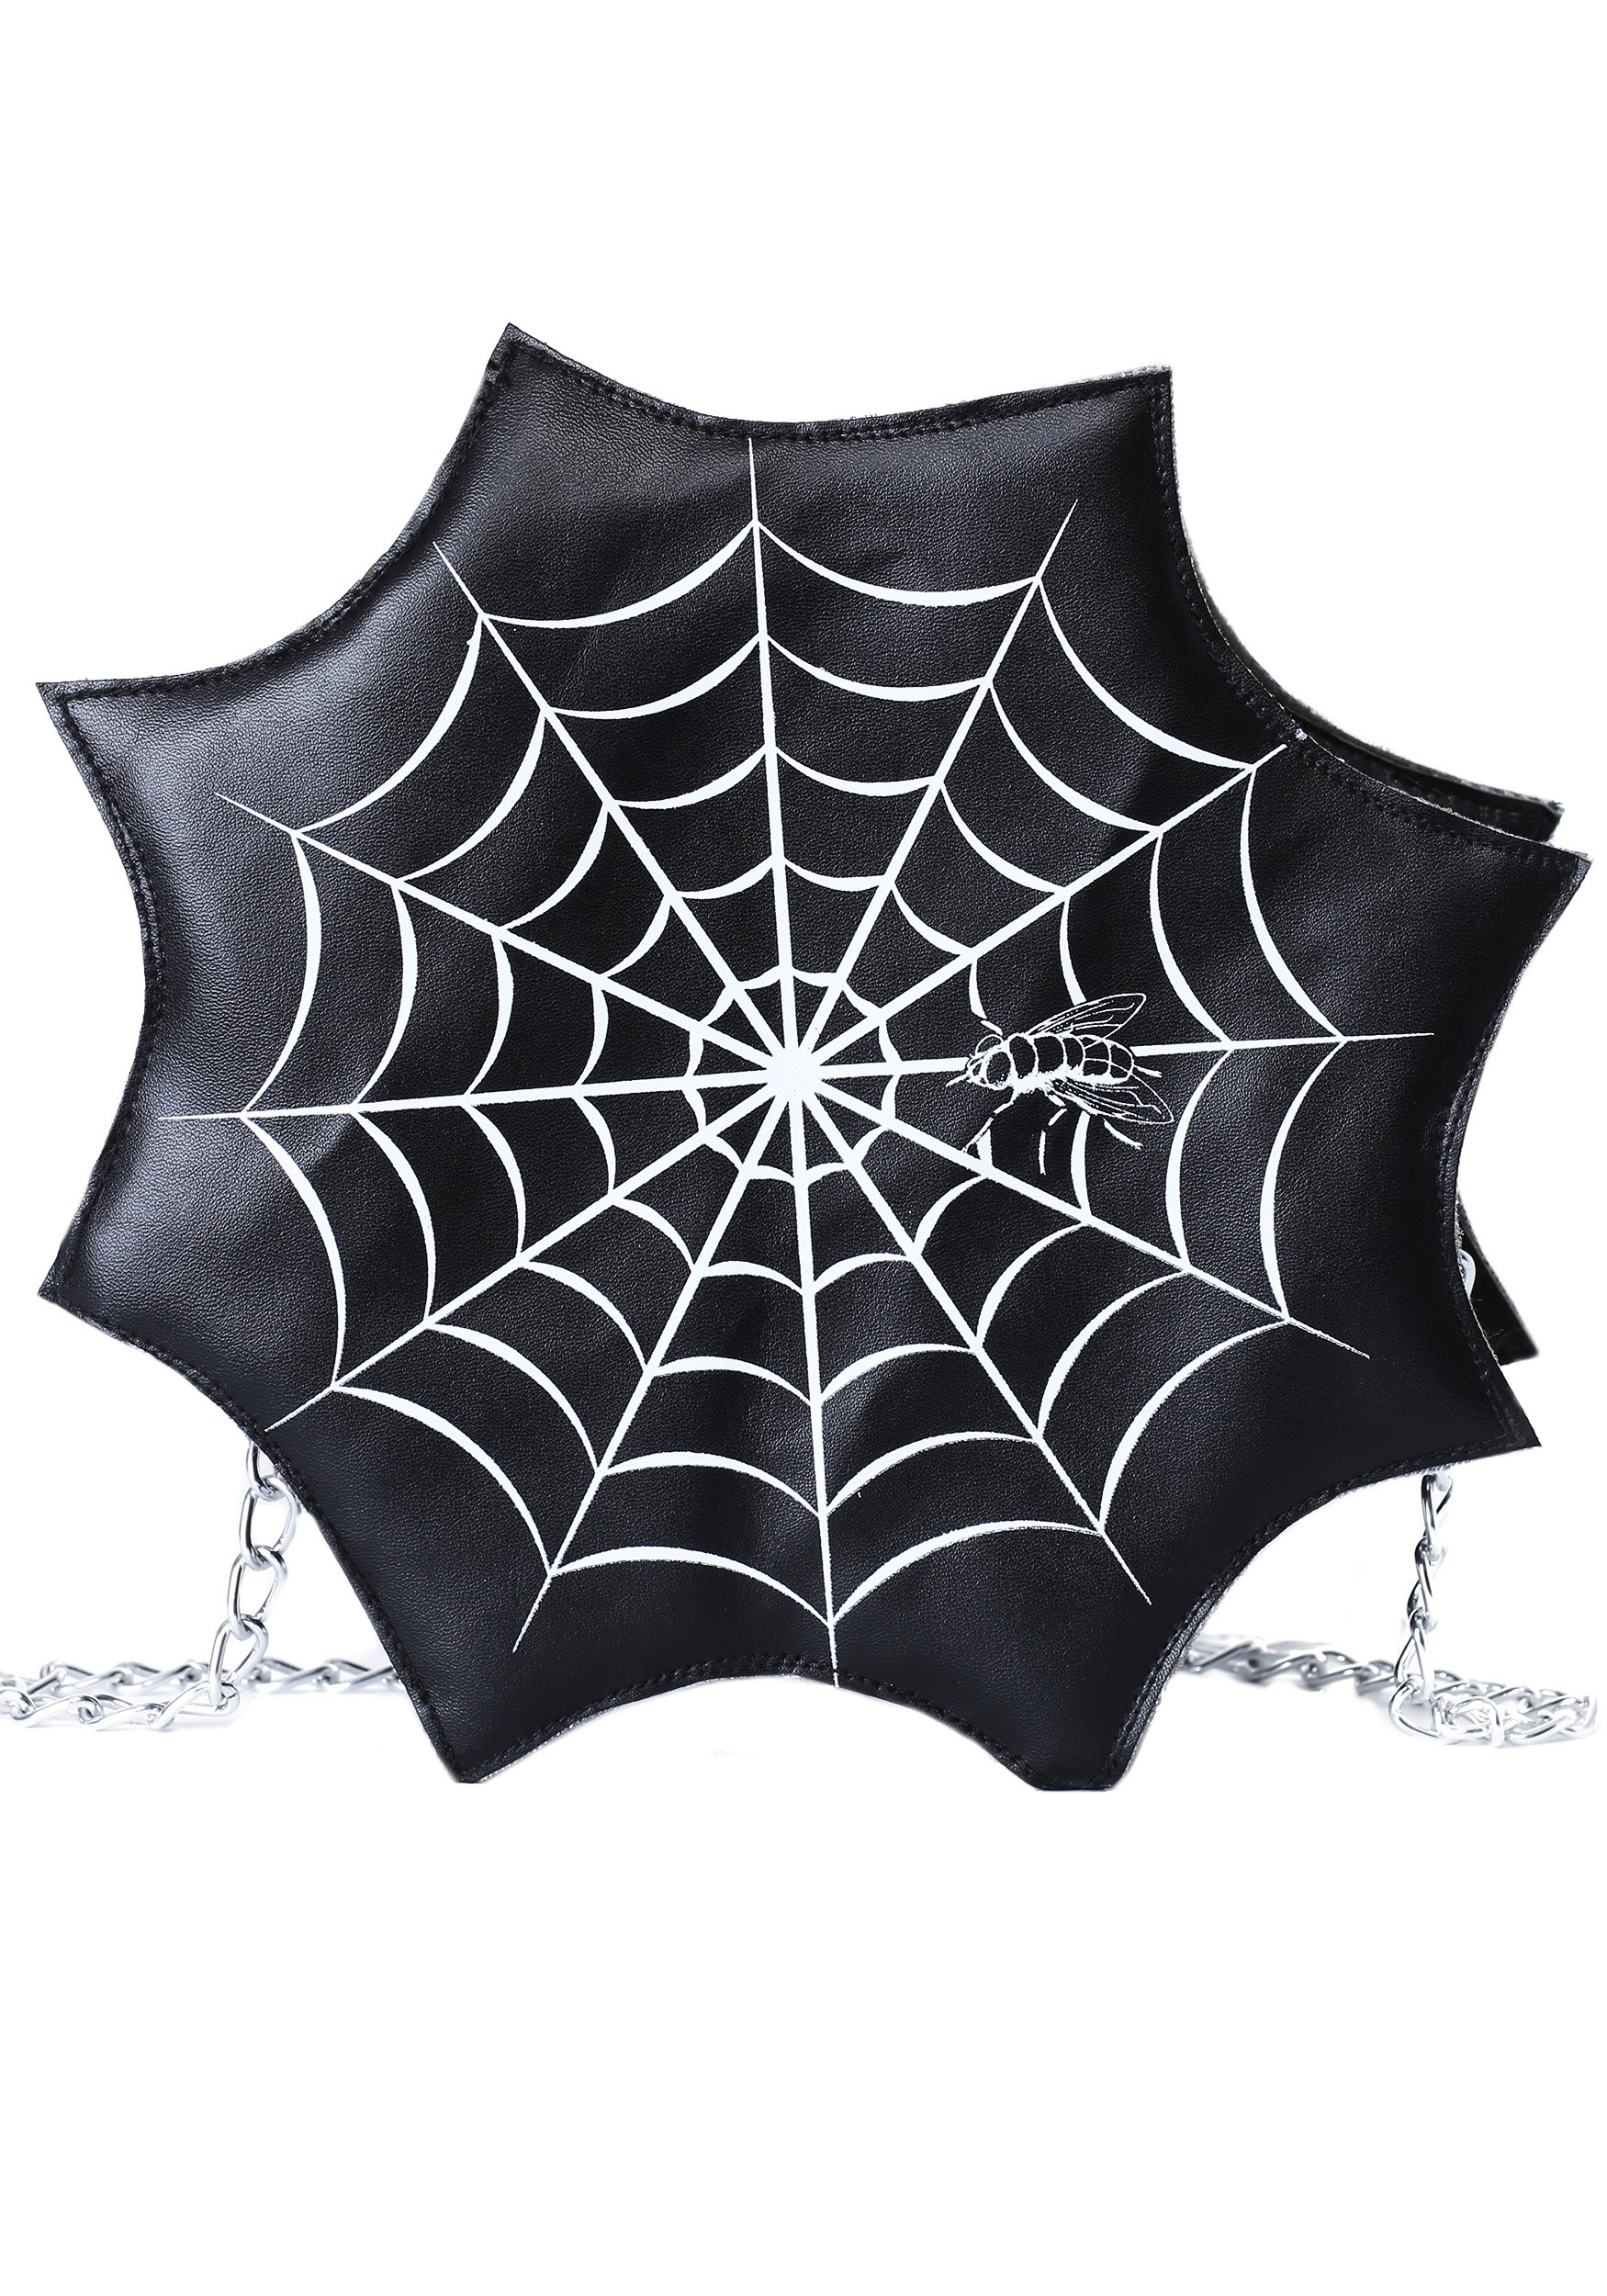 Women’s Spider Web Purse